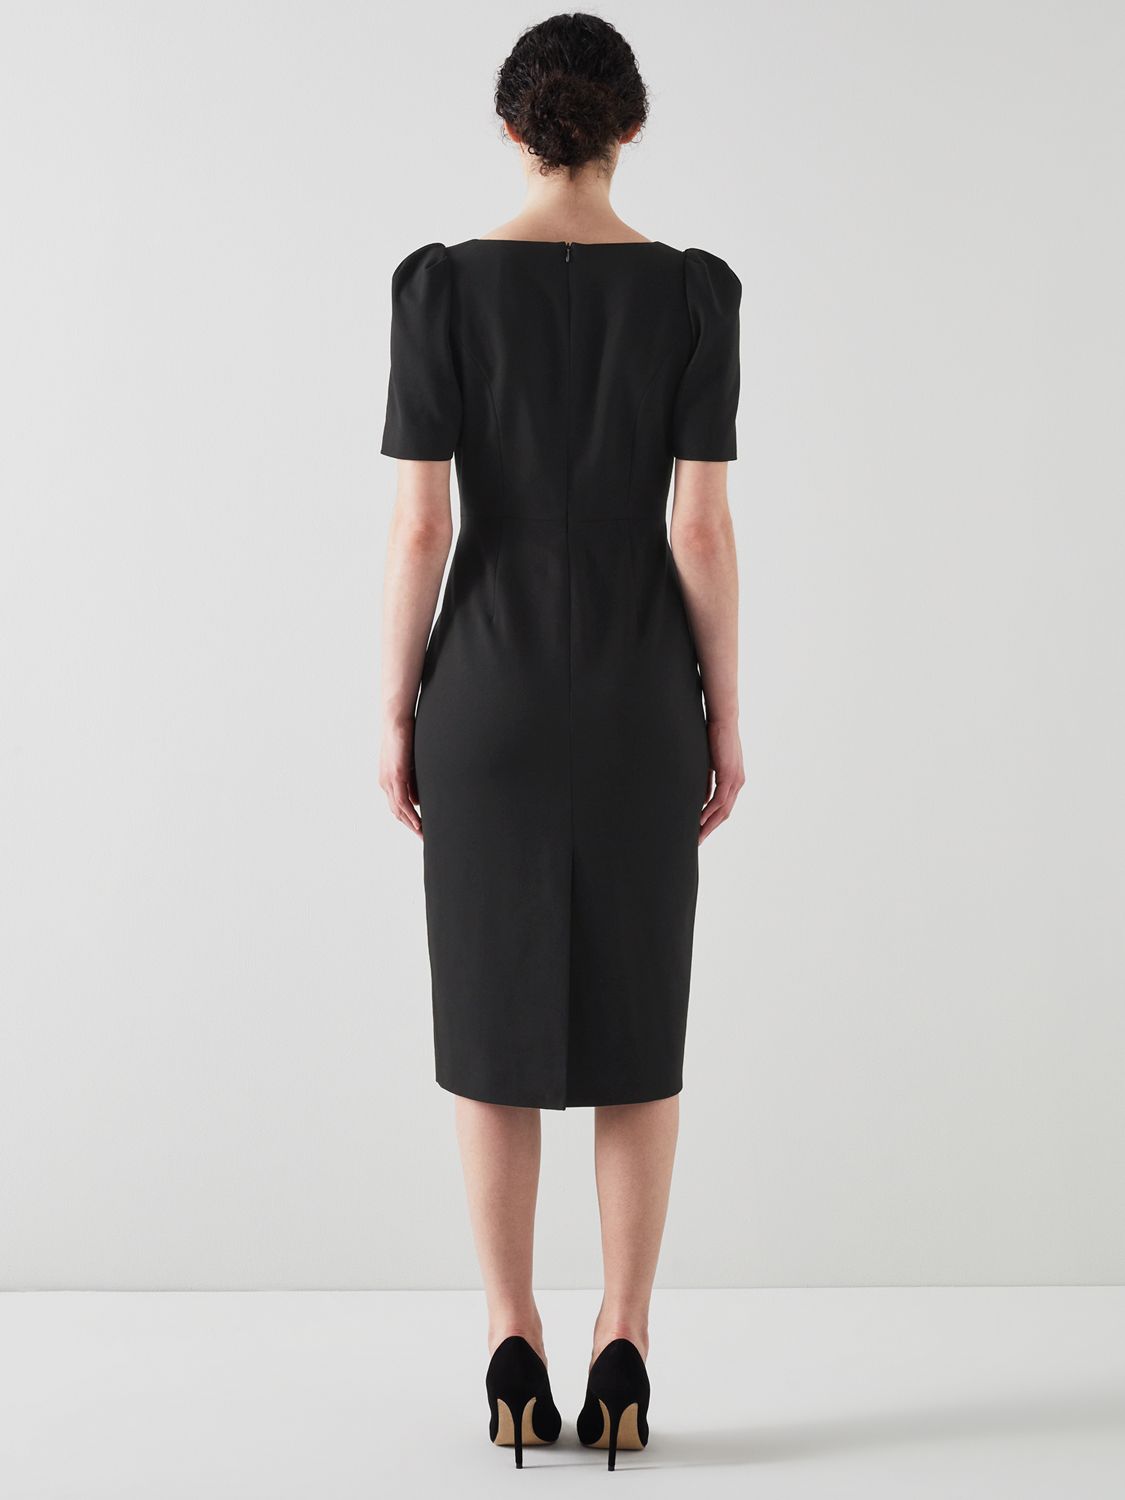 L.K.Bennett Folly Crepe Shift Dress, Black, 6